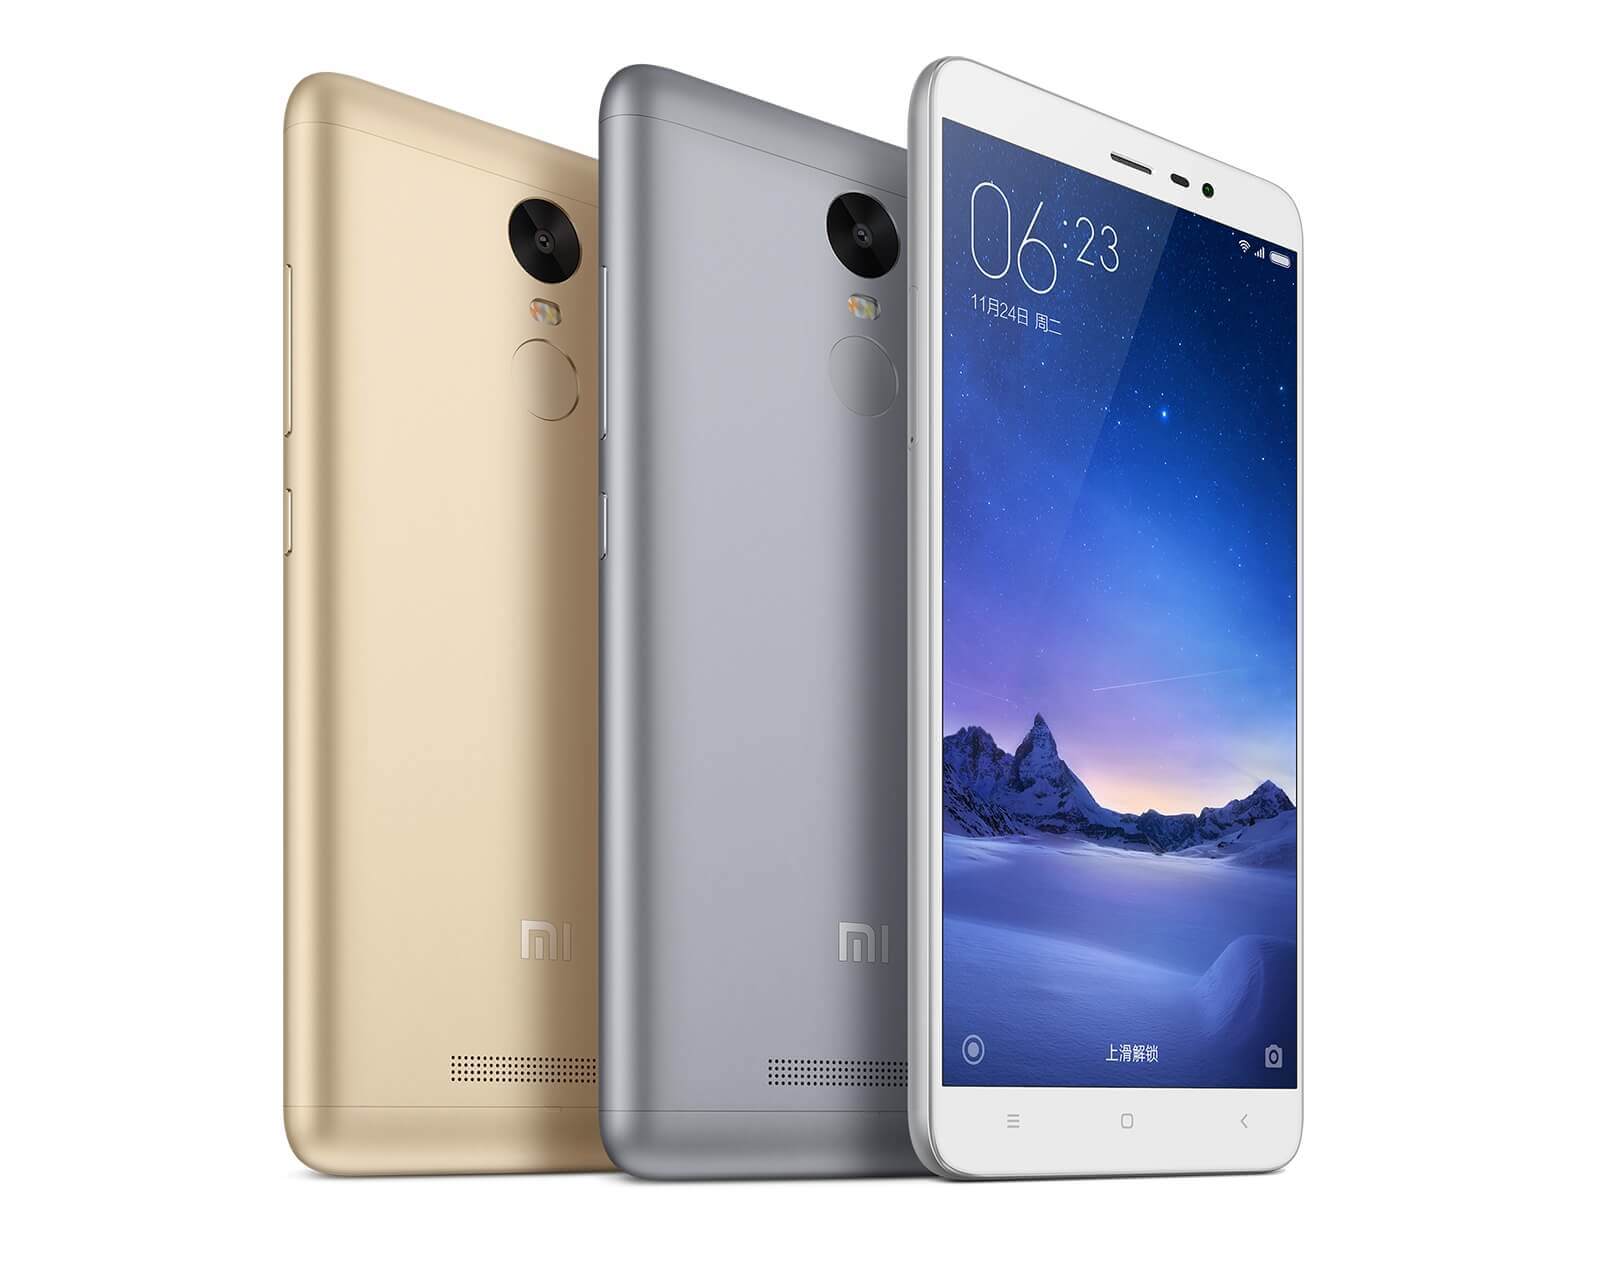 Xiaomi представила Redmi Note 3 Pro стоимостью $150